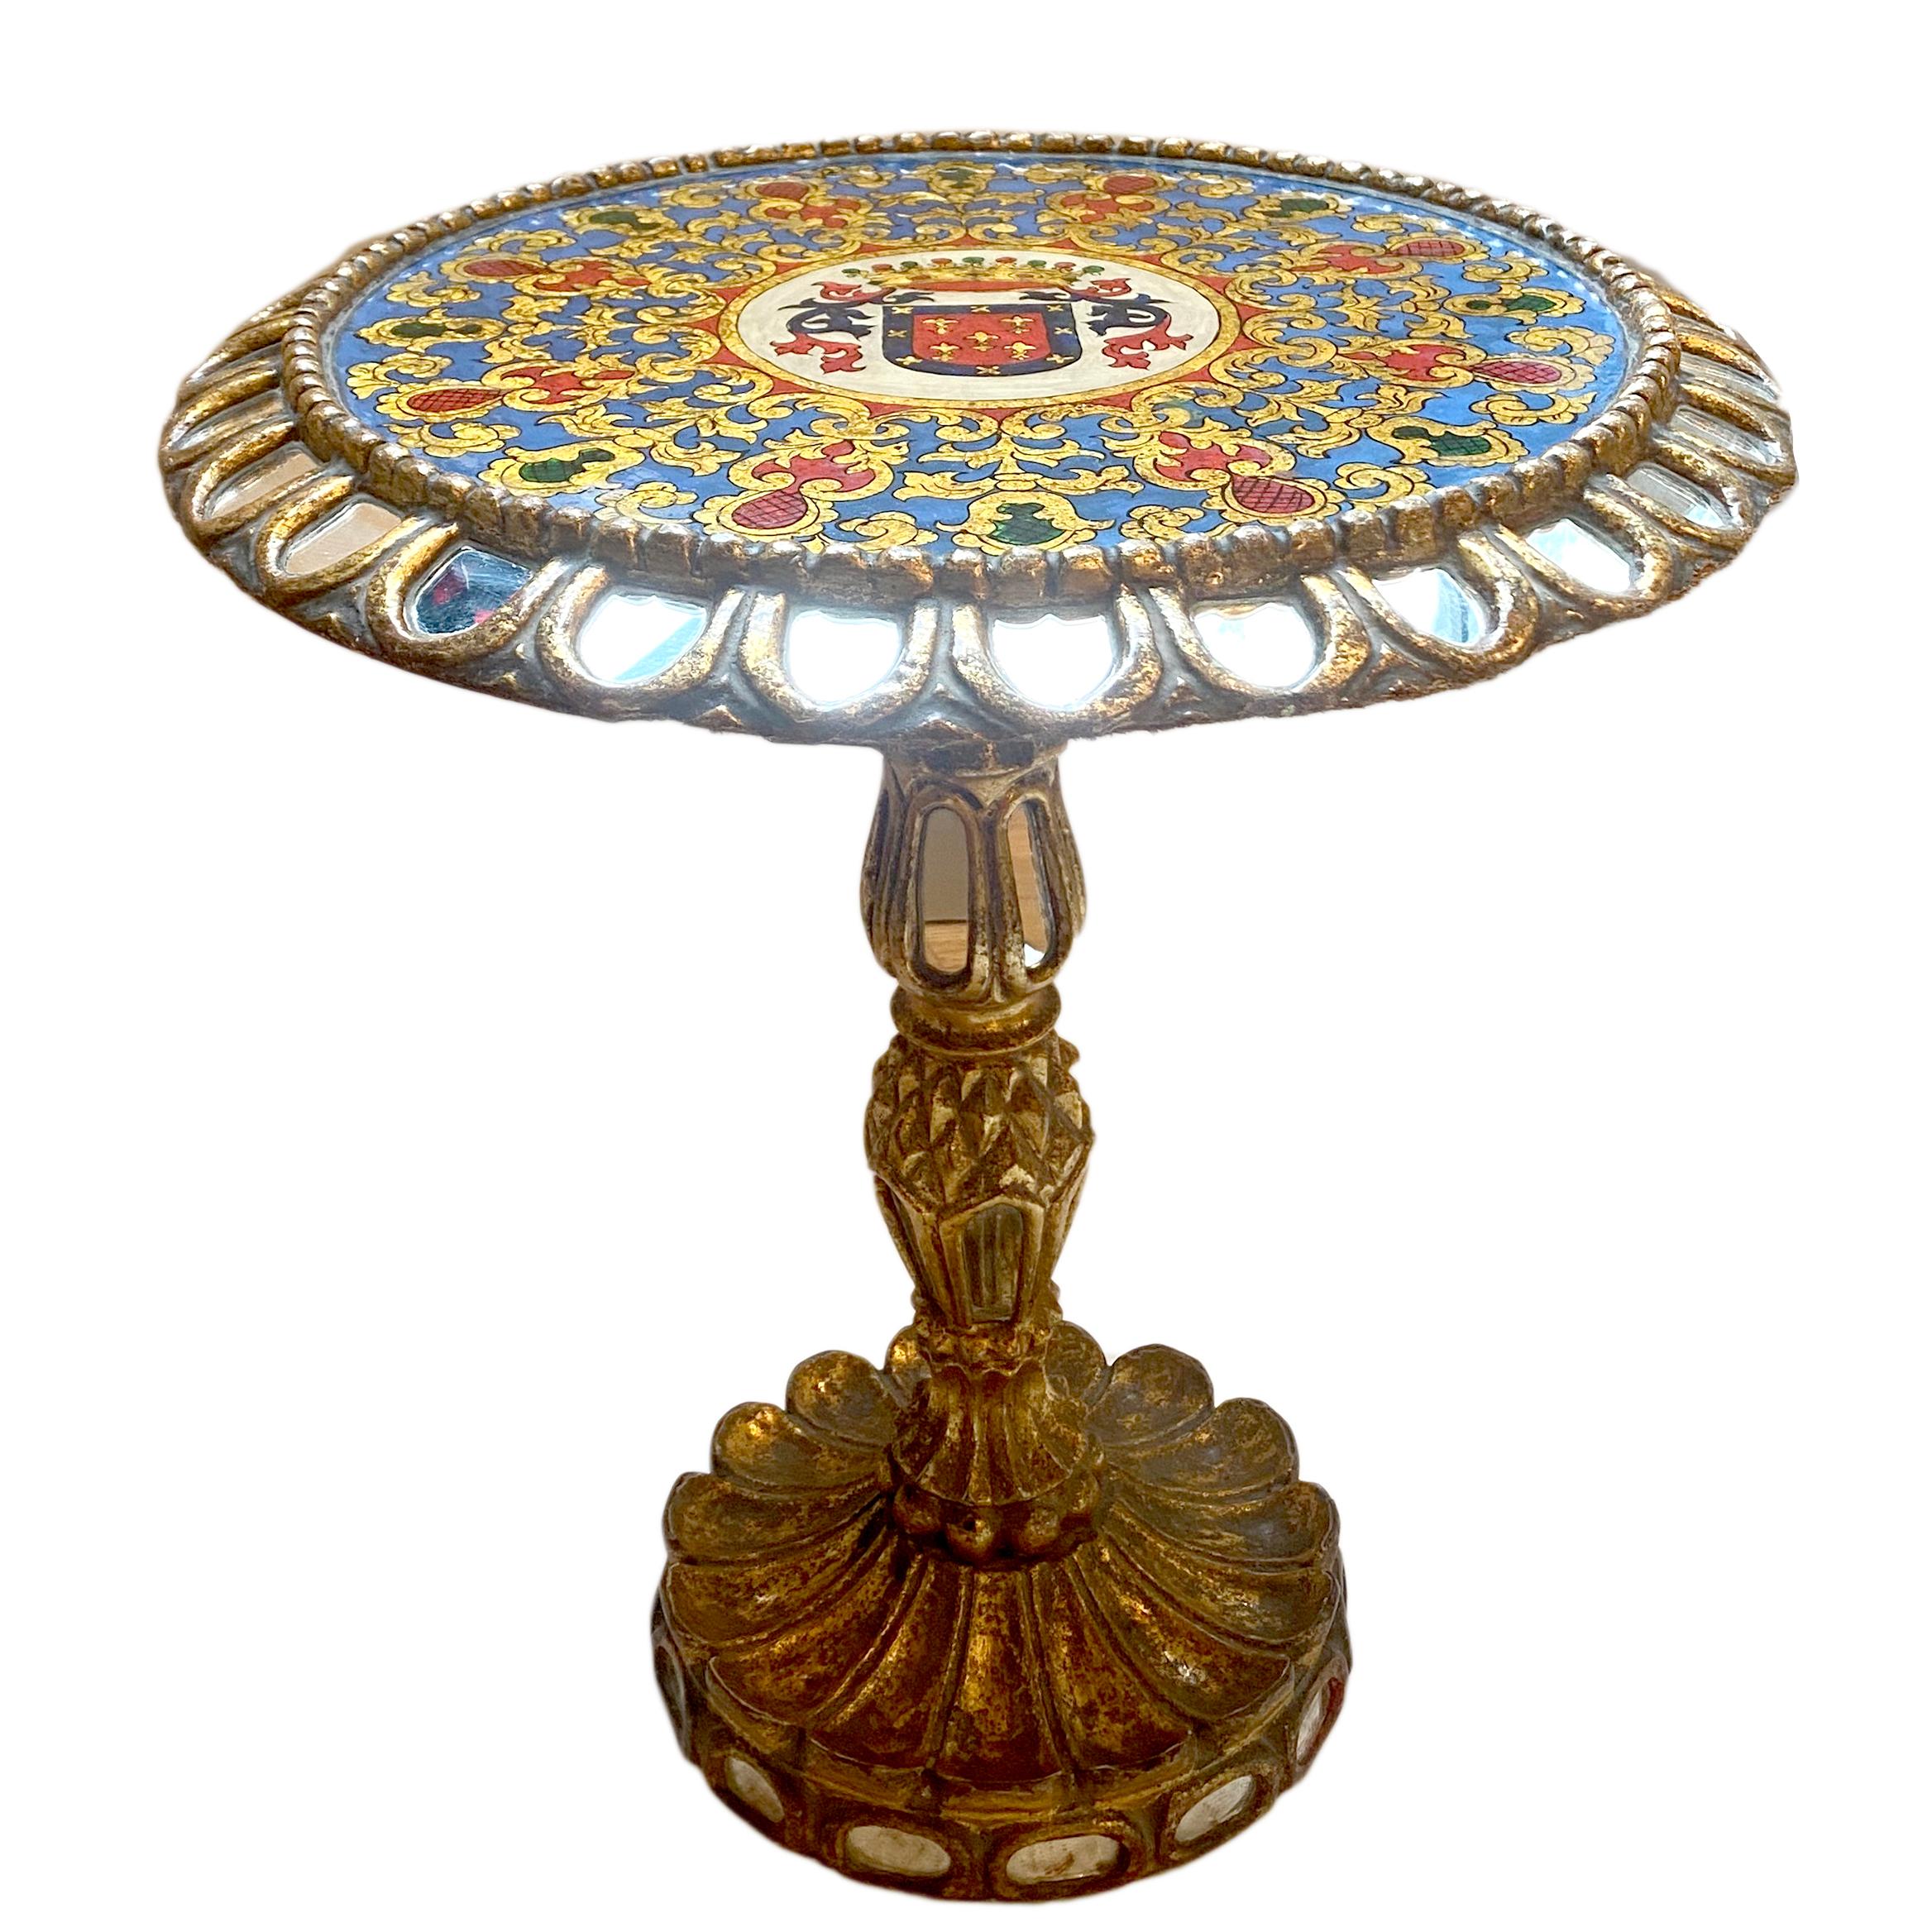 Ein spanischer Tisch mit Spiegeleinsätzen und rückseitig bemalter Glasplatte aus den 1920er Jahren.

Abmessungen:
Durchmesser: 19,75